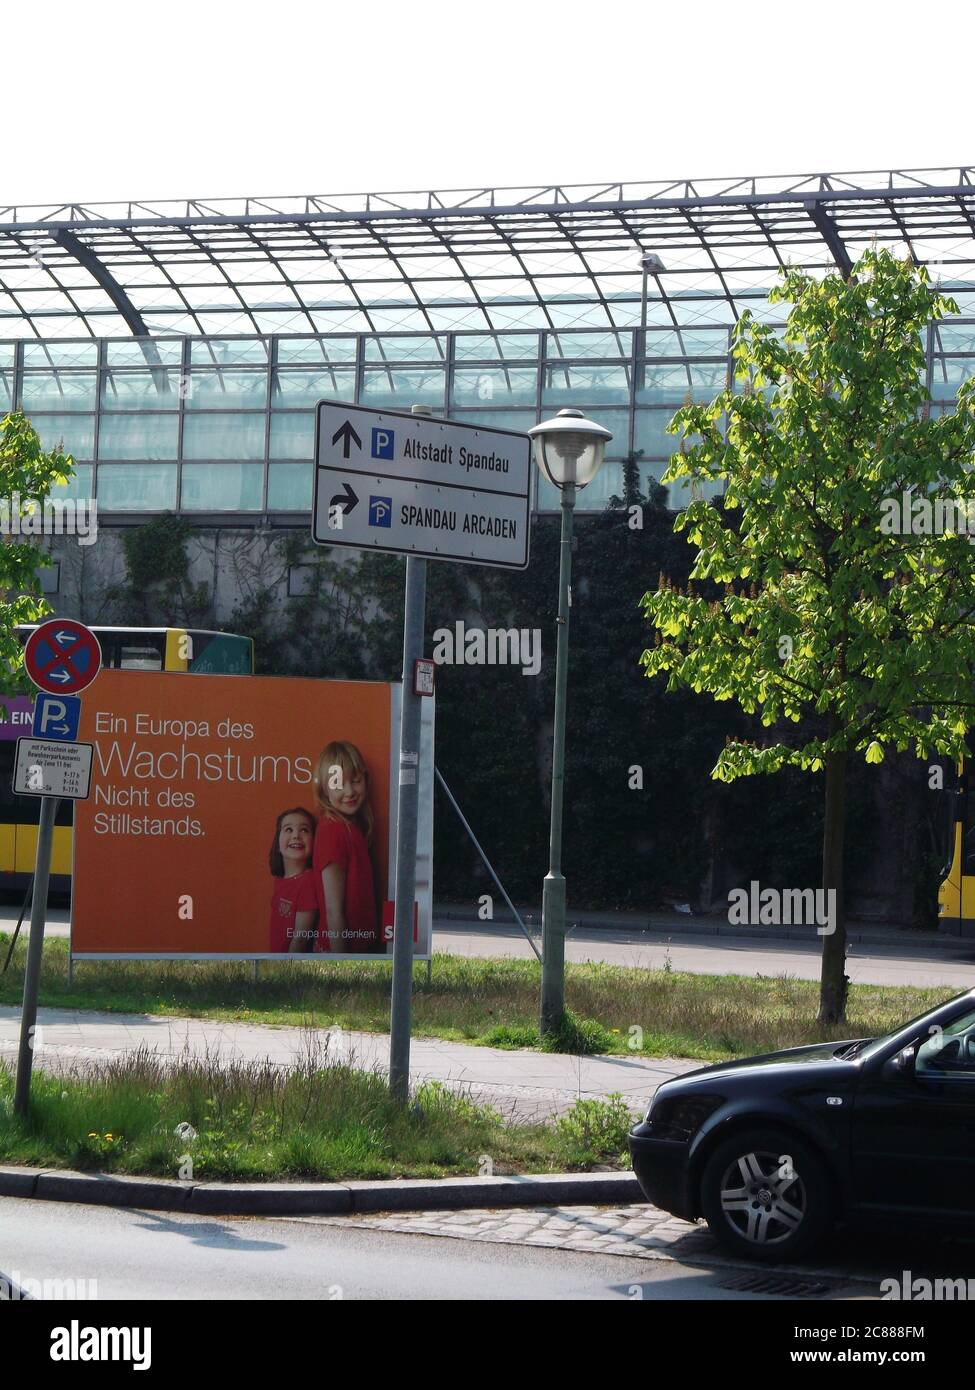 Ein Europa des Wachstums. Nicht des Stillstands, Wahlkampfplakat der SPD, Europawahl 2014, in der Seegefelder Straße vor dem Bahnhof Berlin-Spandau Foto de stock